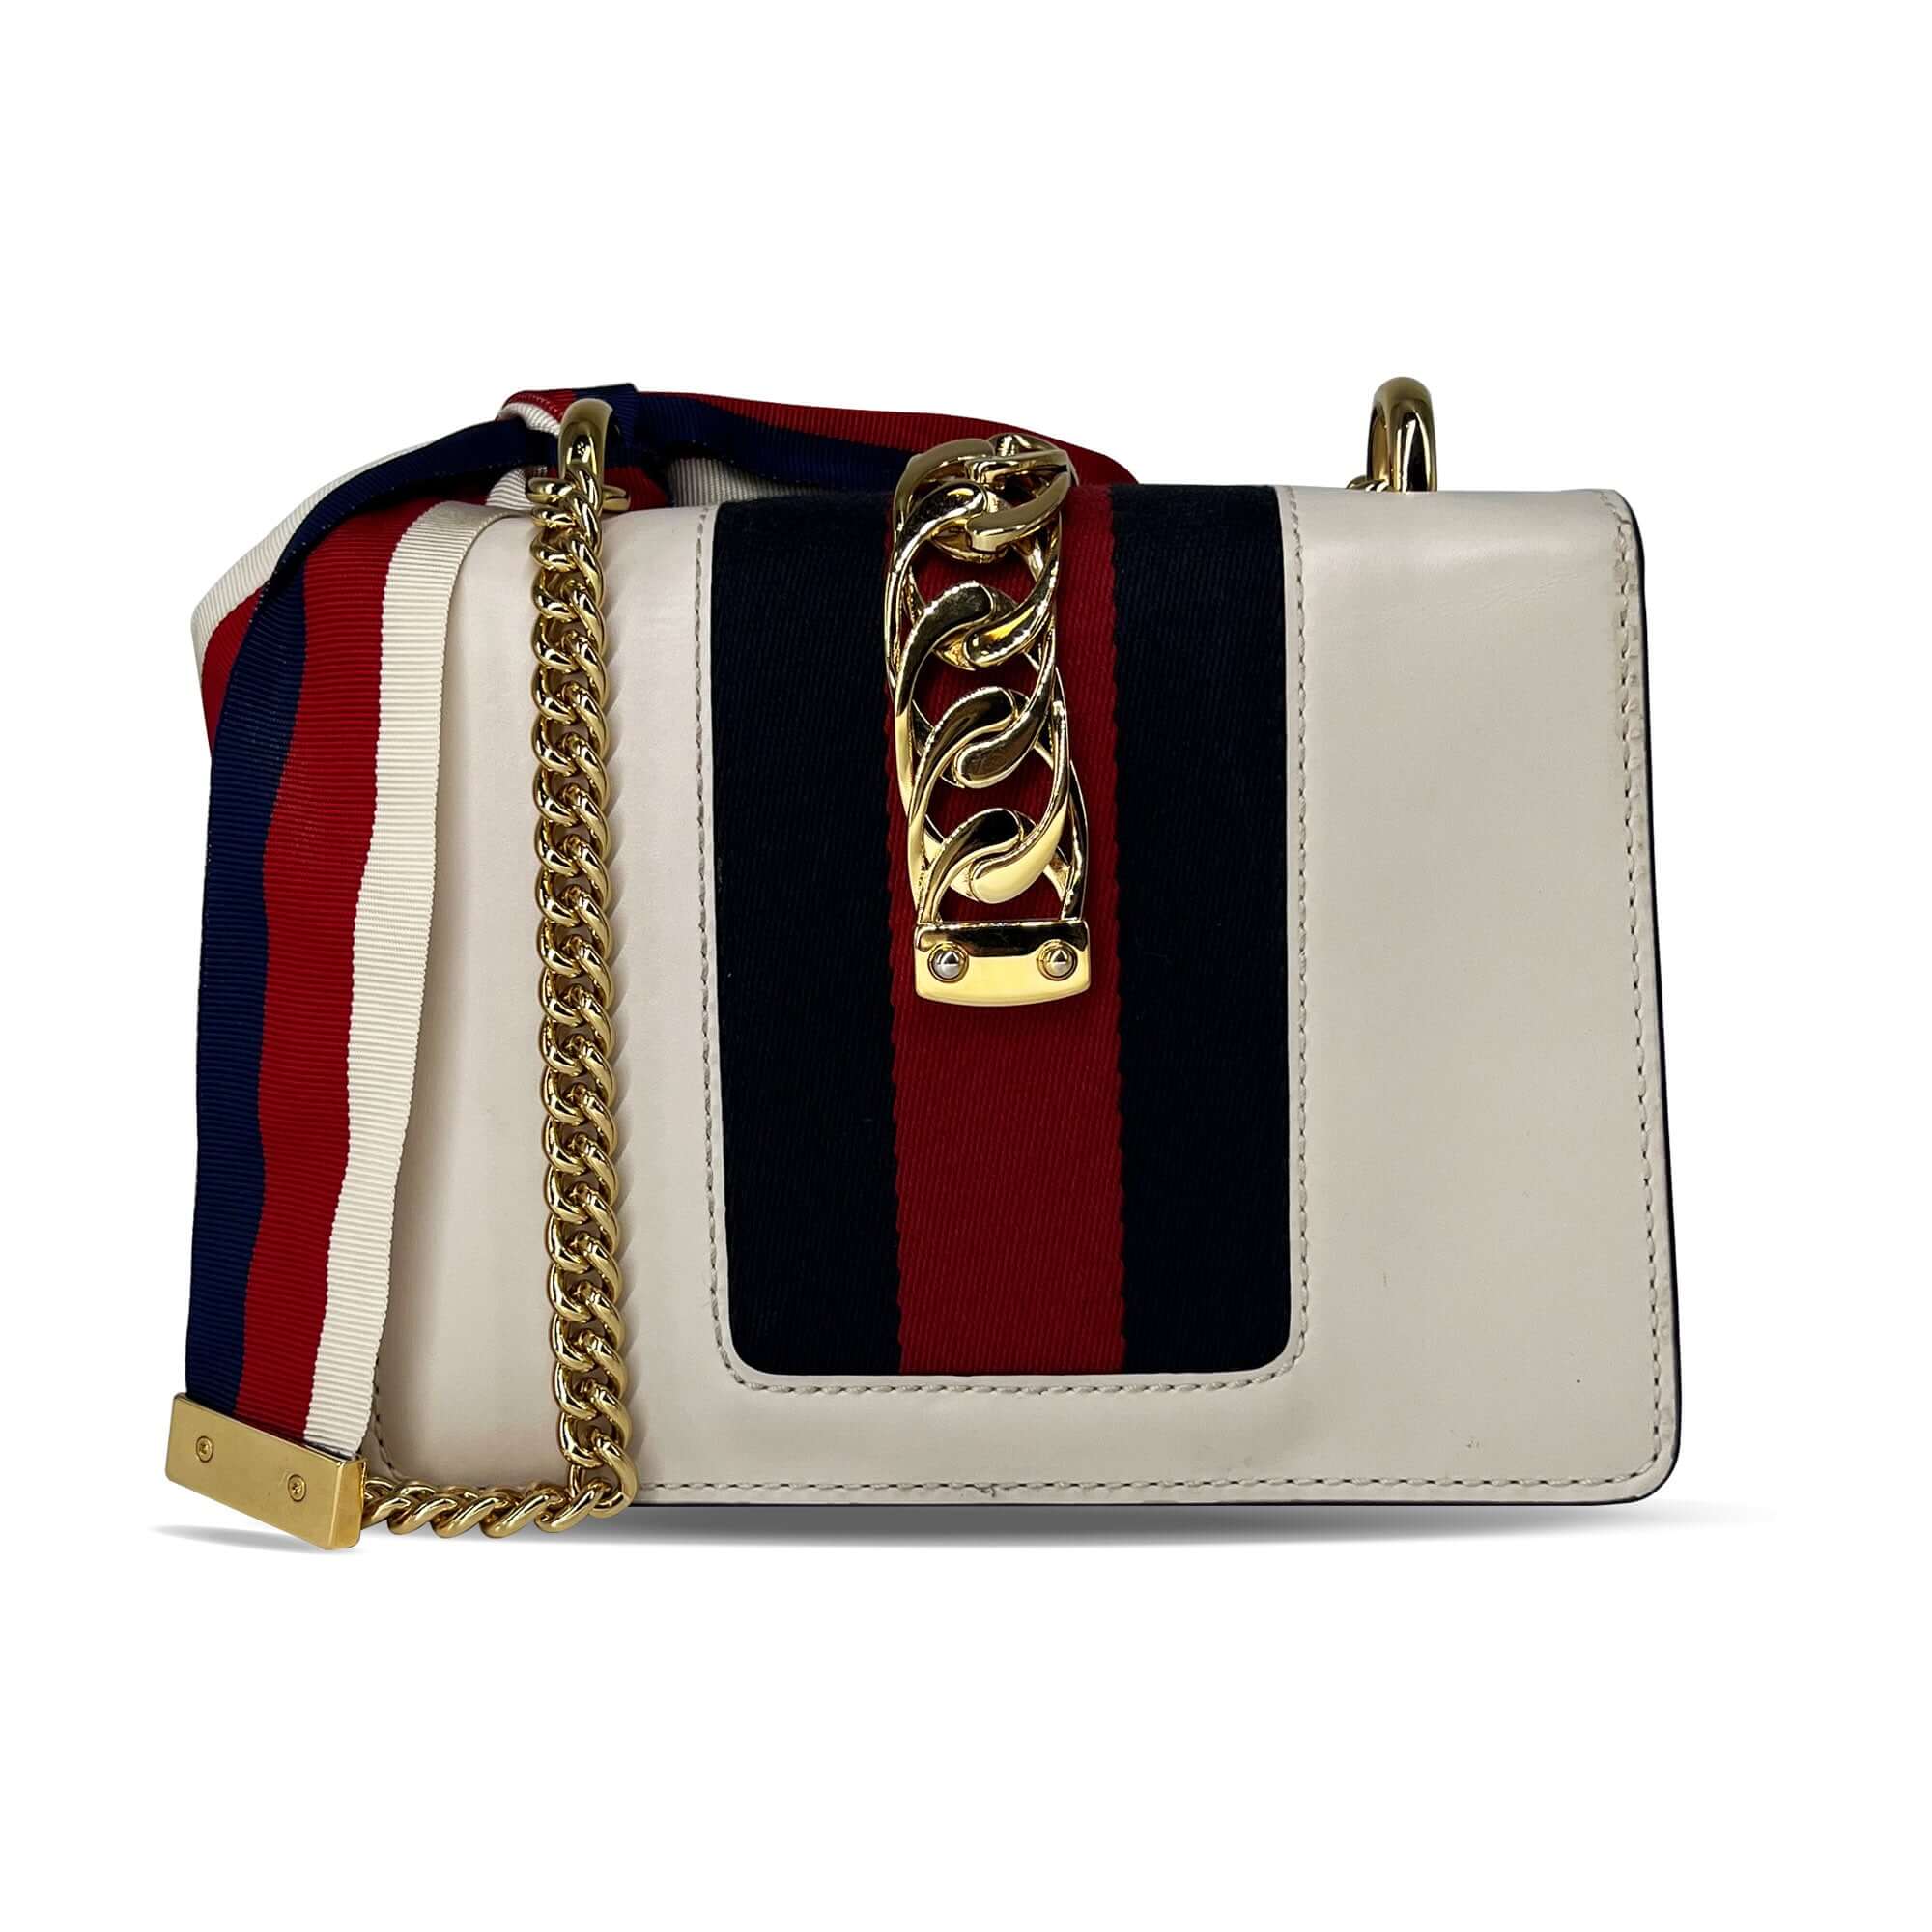 Gucci Sylvie chain bag